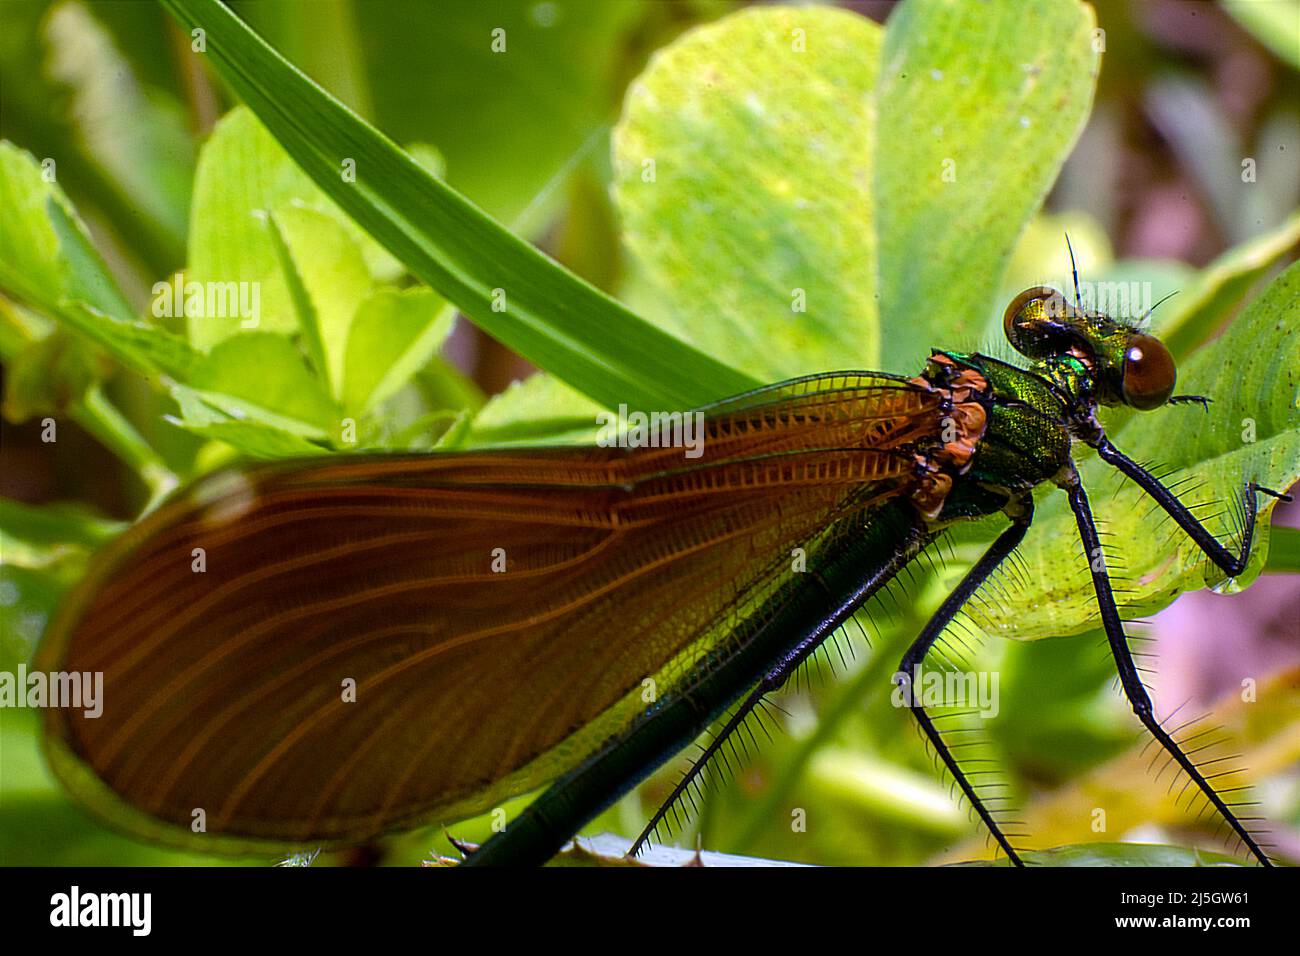 Dragonlfy insectos vivos macro fotografía, alas estructura natural diseño inspiración y engeling inspiración en la naturaleza. Foto de stock